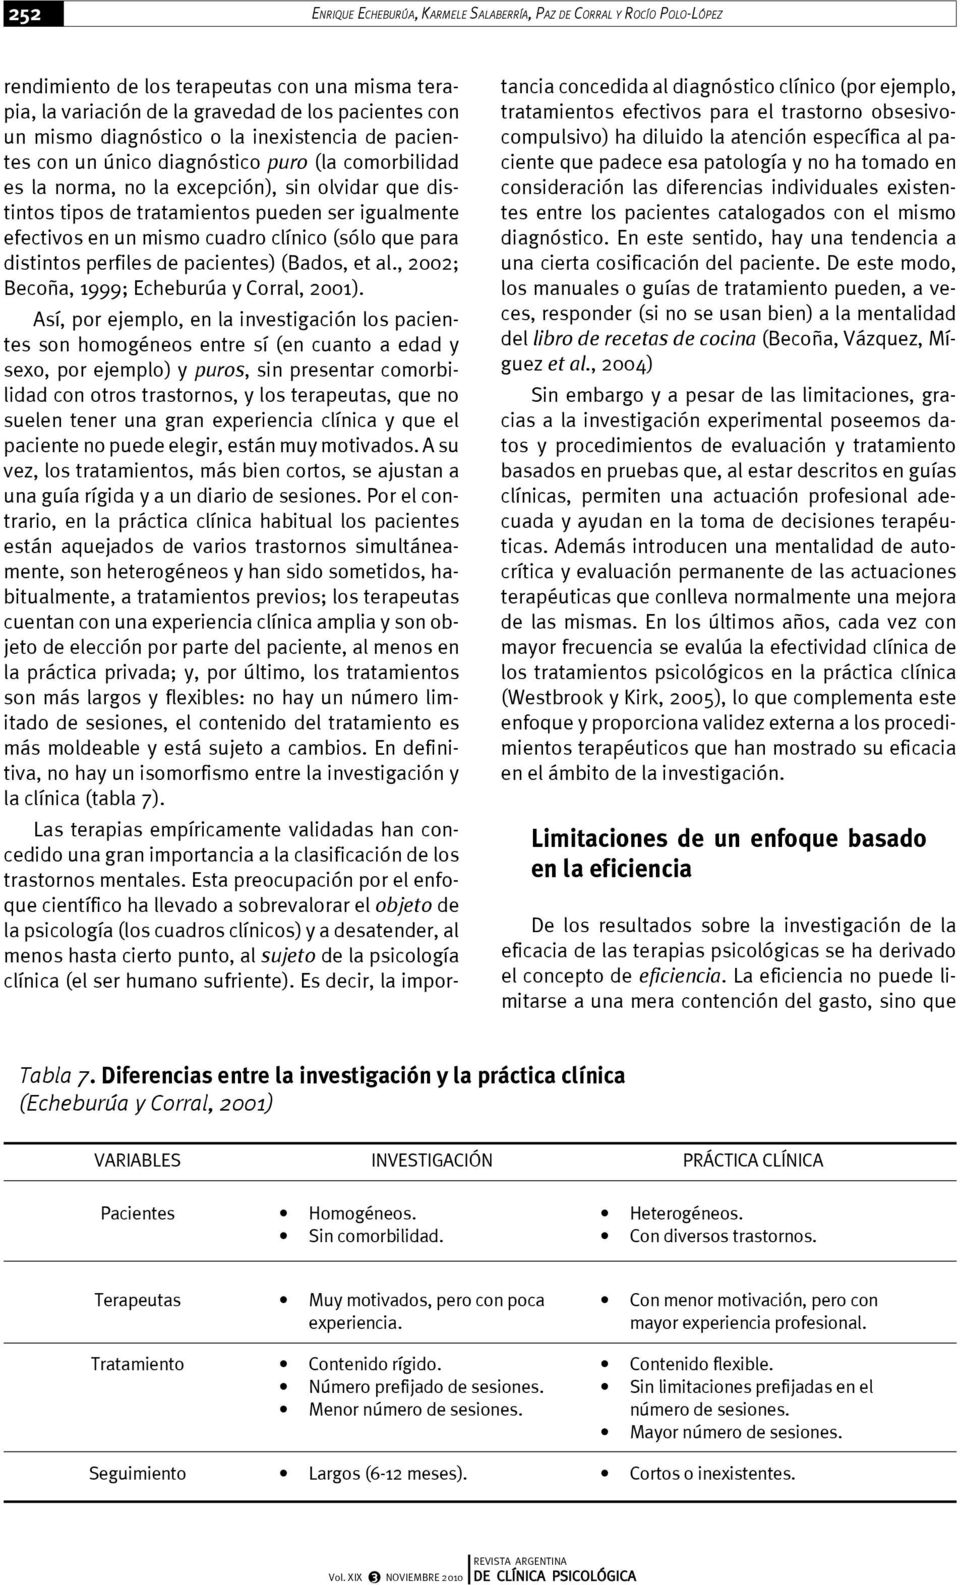 mismo cuadro clínico (sólo que para distintos perfiles de pacientes) (Bados, et al., 2002; Becoña, 1999; Echeburúa y Corral, 2001).